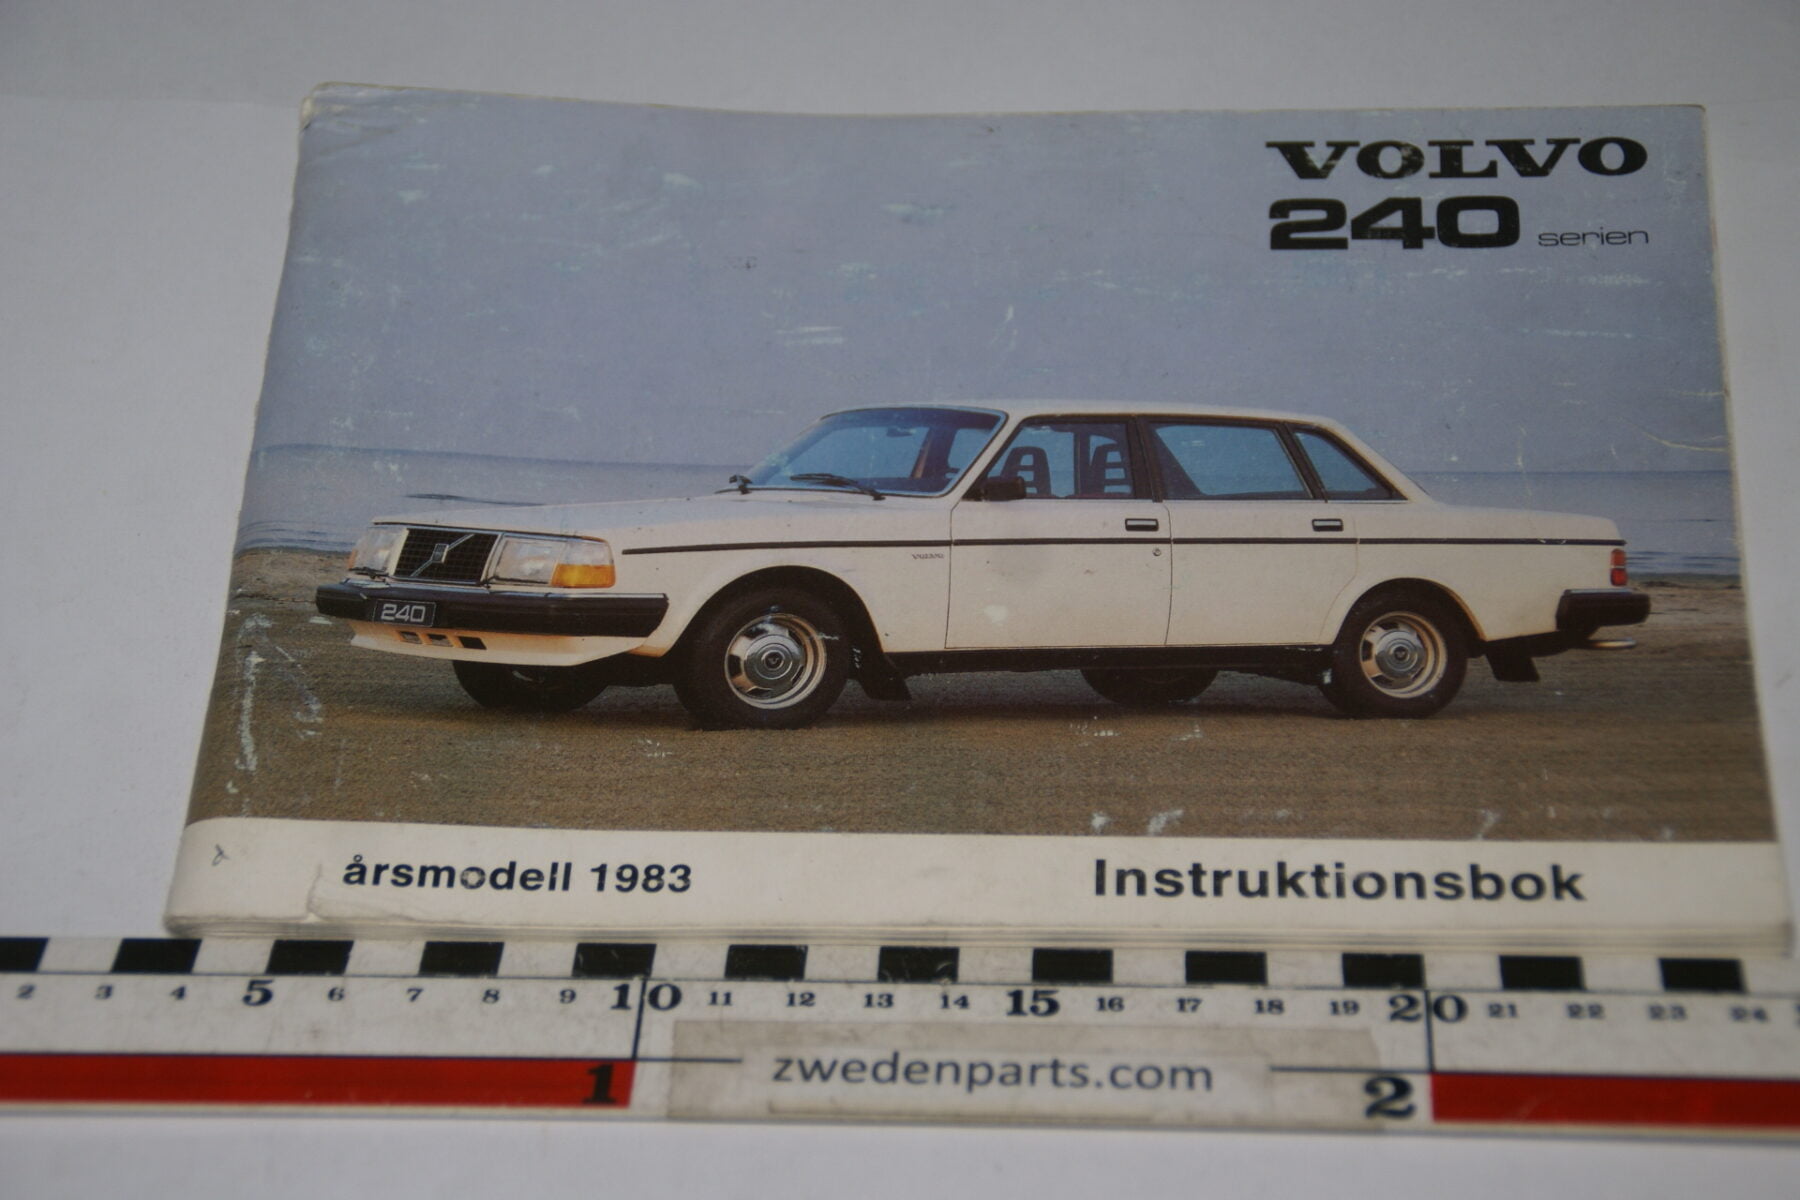 DSC07050 1982 origineel Volvo 240  instruktionsbok TP 2326-2 Svenskt